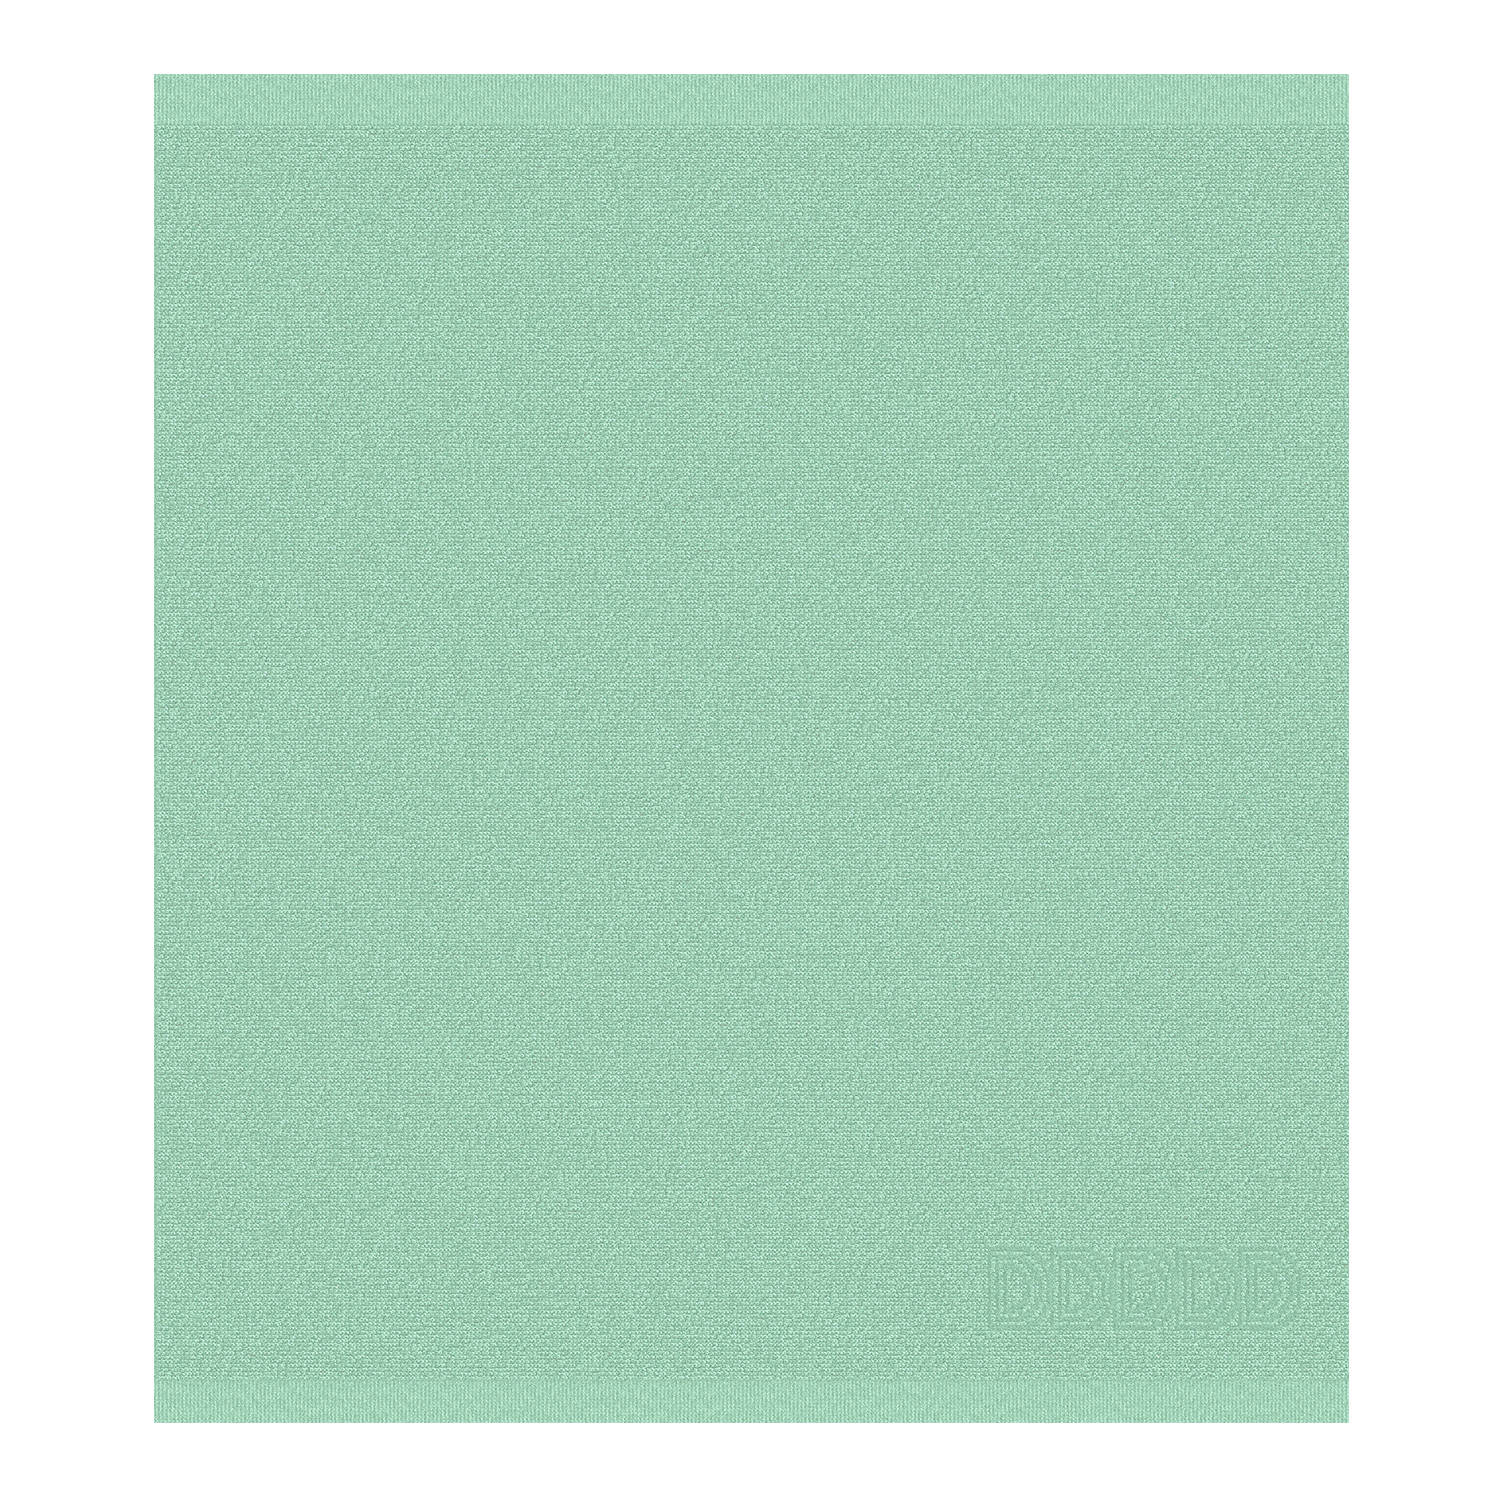 DDDDD - 6x Keukendoek - Logo - 50x55 cm - Pastel Groen - Set van 6 stuks